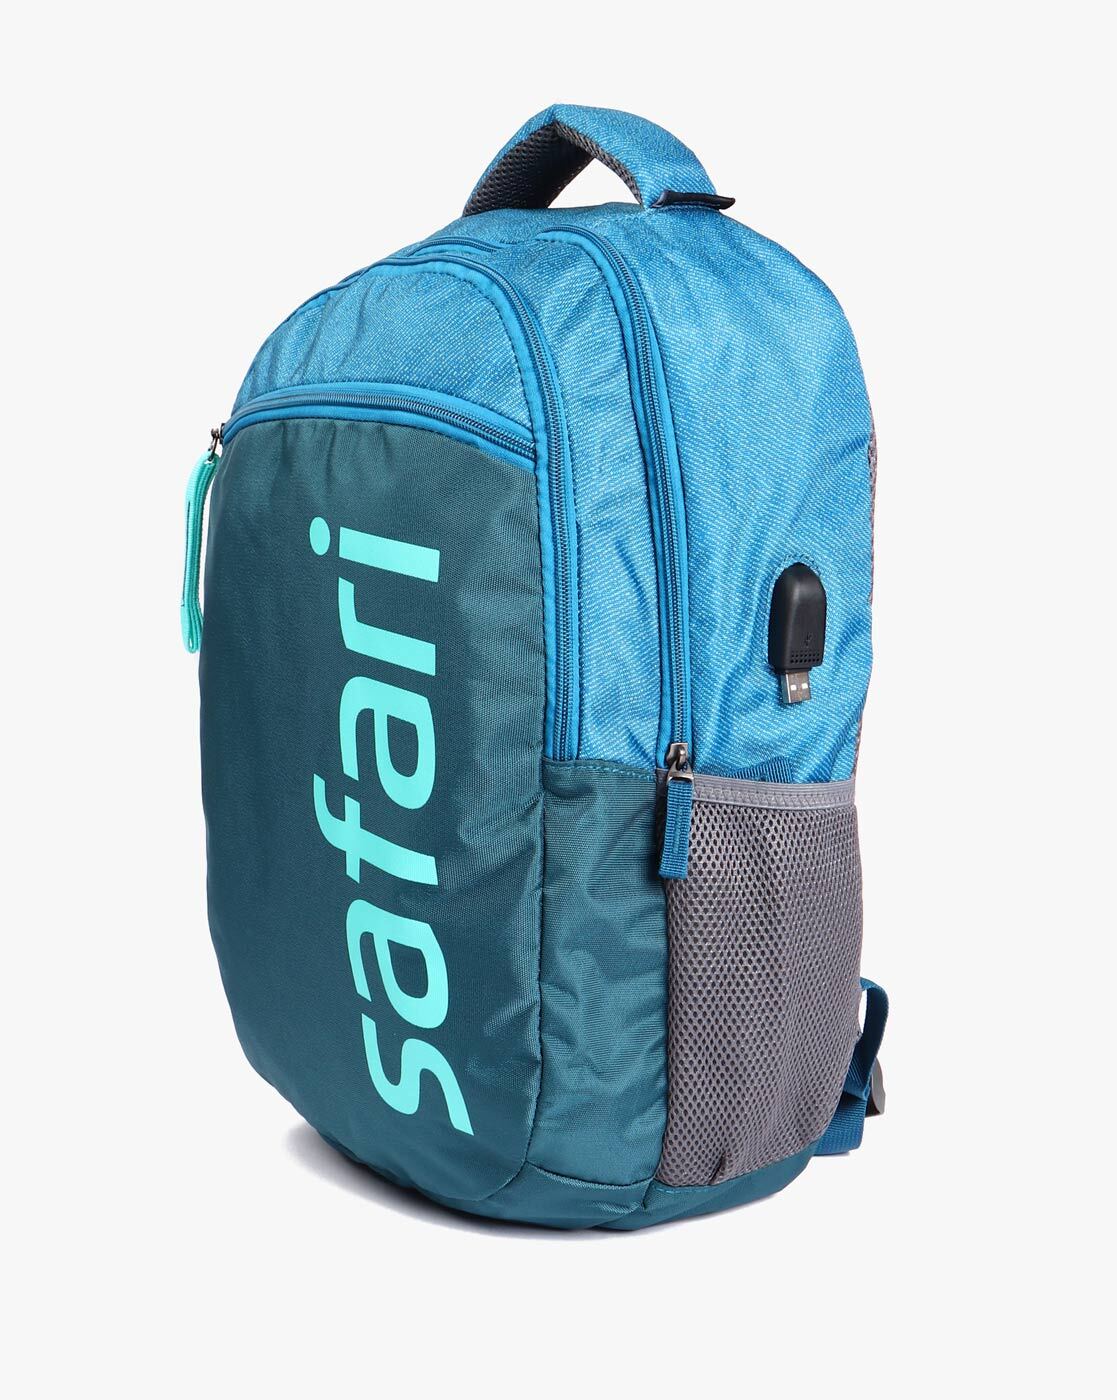 Safari Backpacks  Buy Safari Backpacks Online at Best Prices In India   Flipkartcom